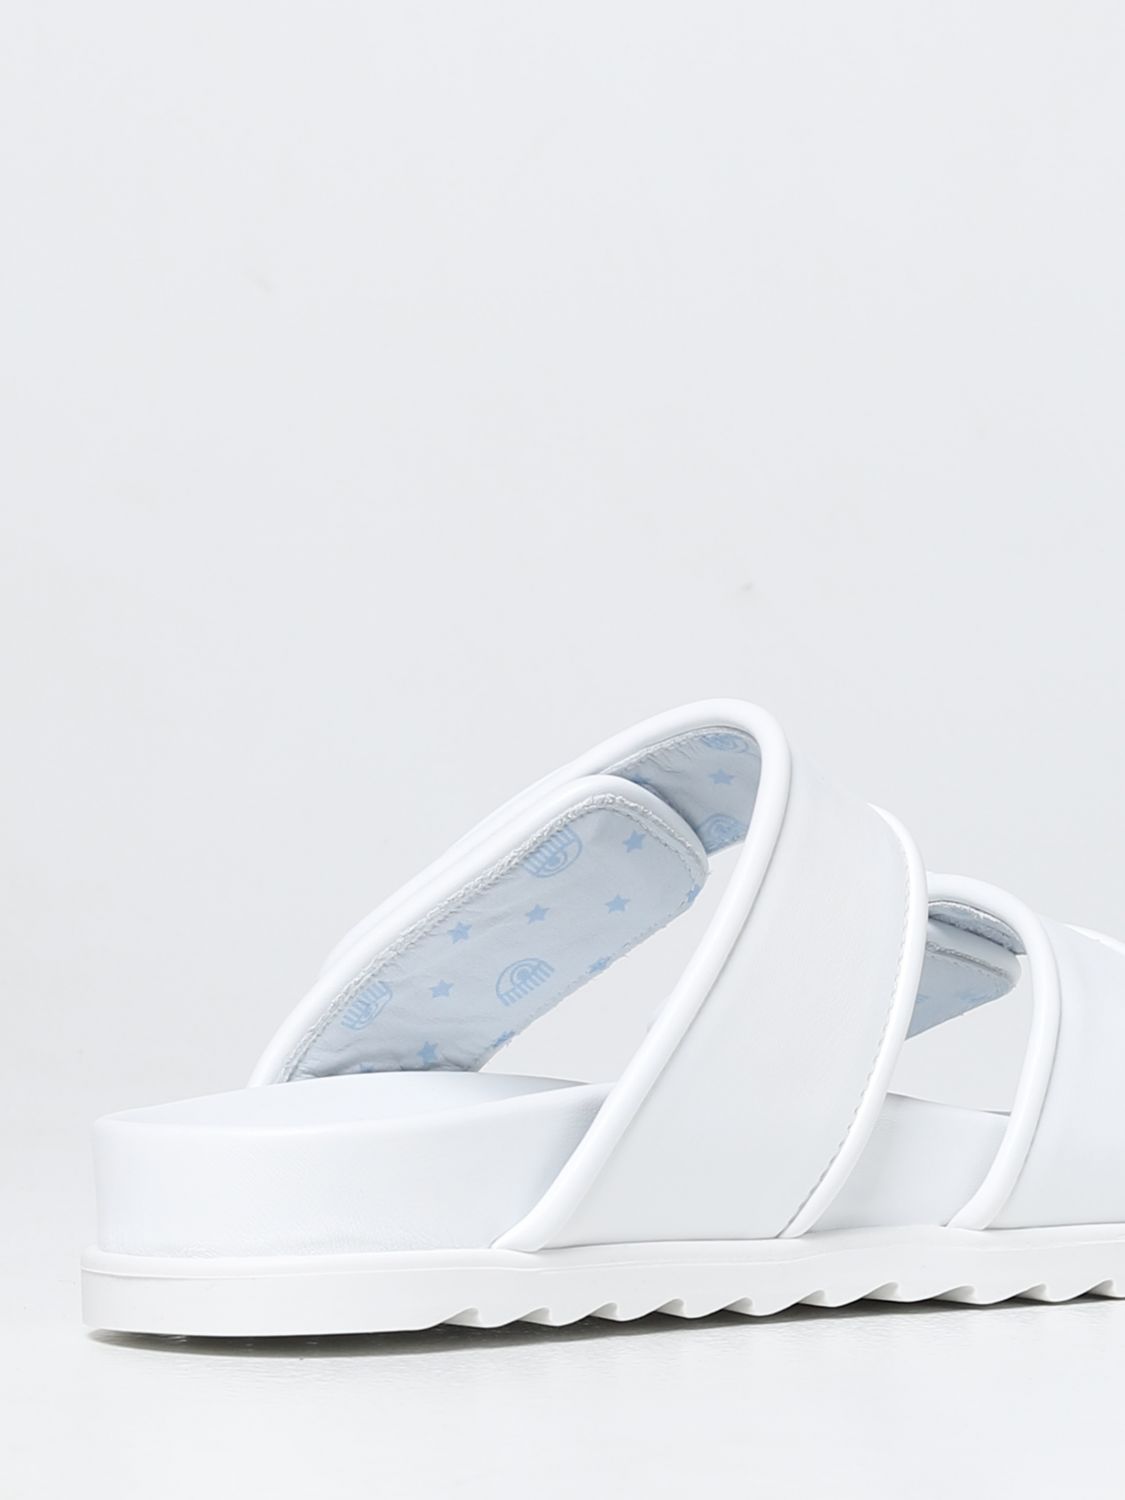 sandalias y chanclas de Sandalias planas Sandalias de Chiara Ferragni de color Blanco Mujer Zapatos de Zapatos planos 